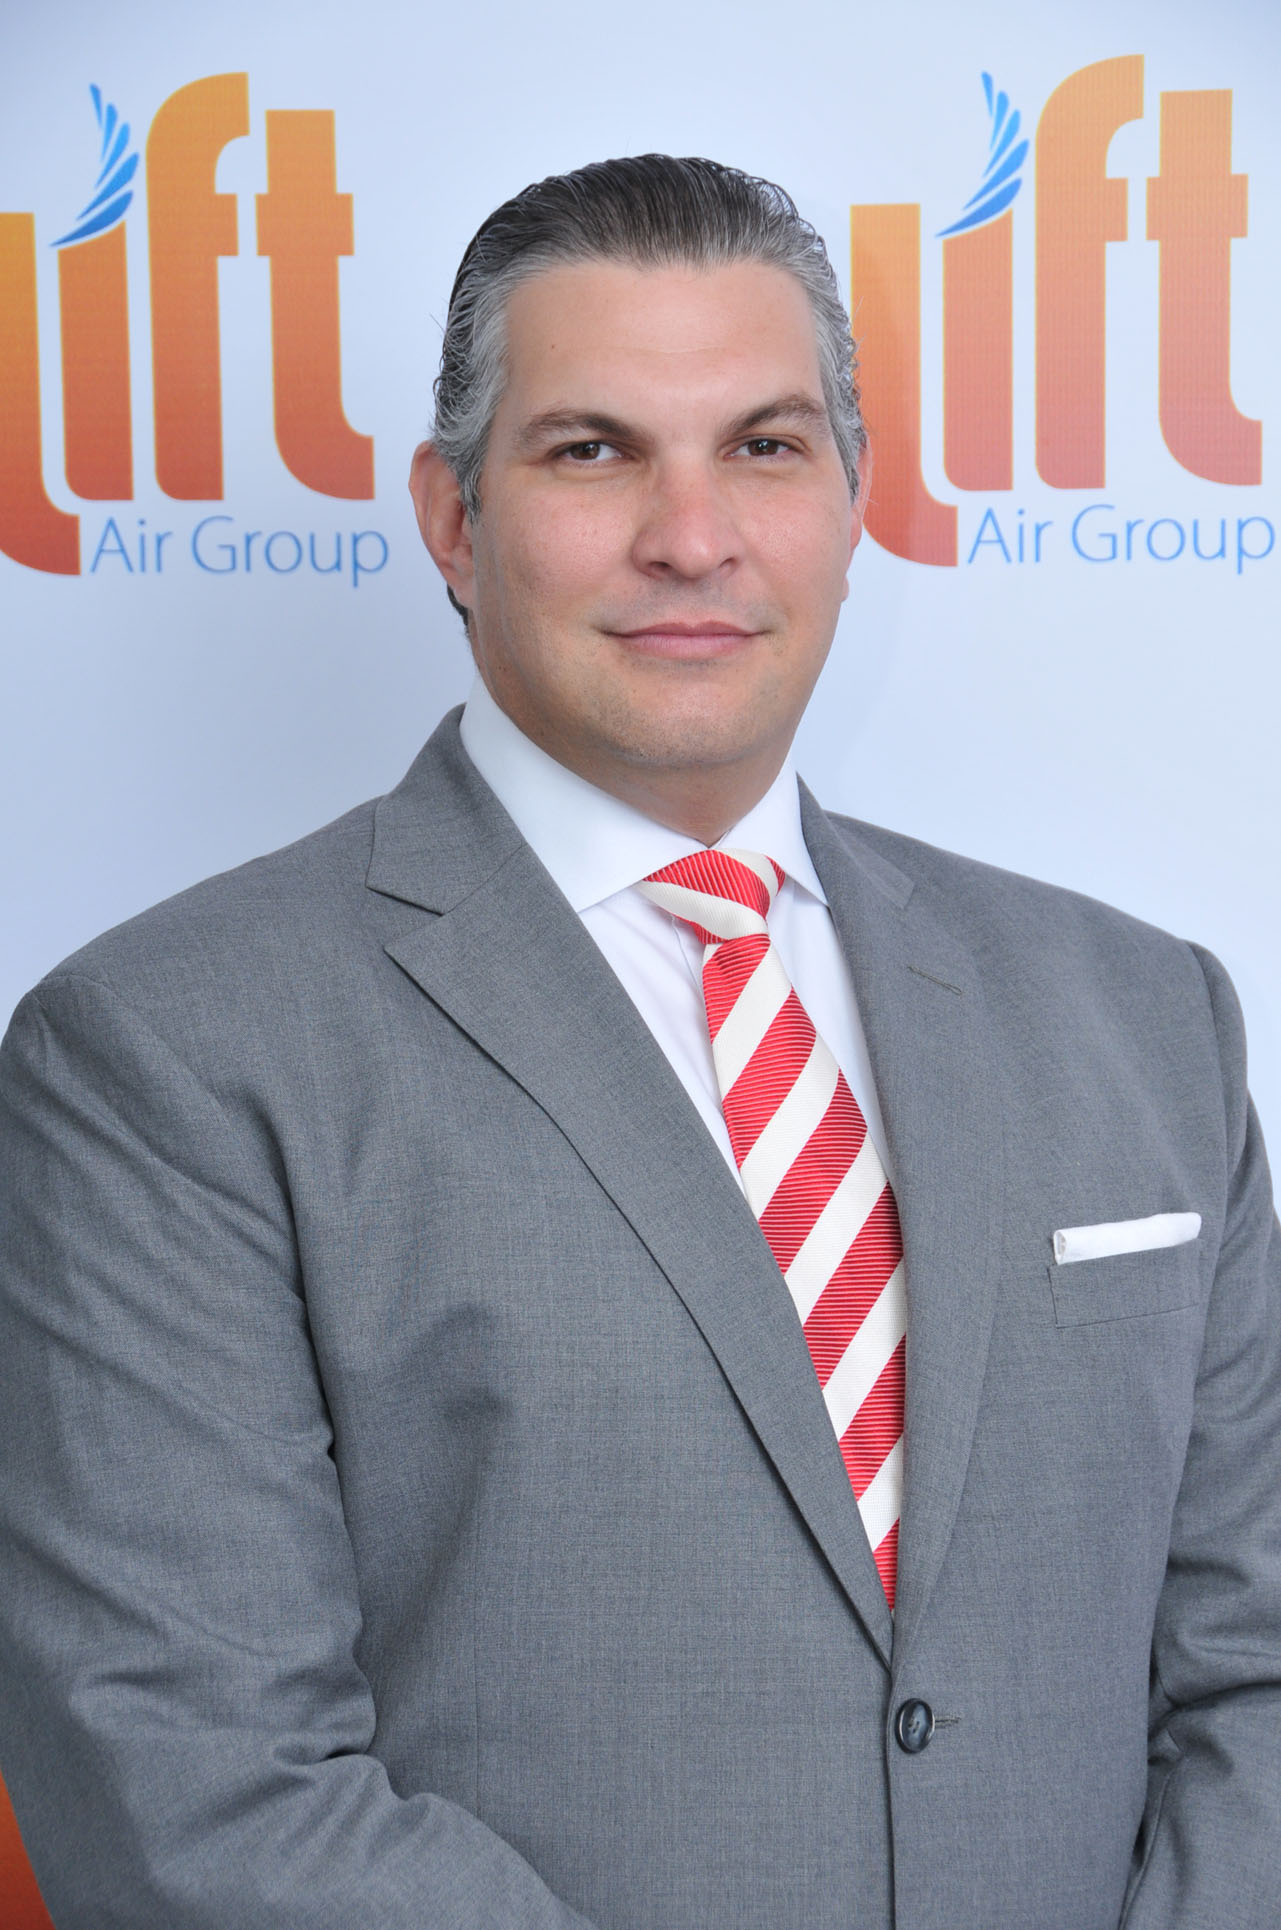 Ryan Polanco, presidente de Lift Air Group.